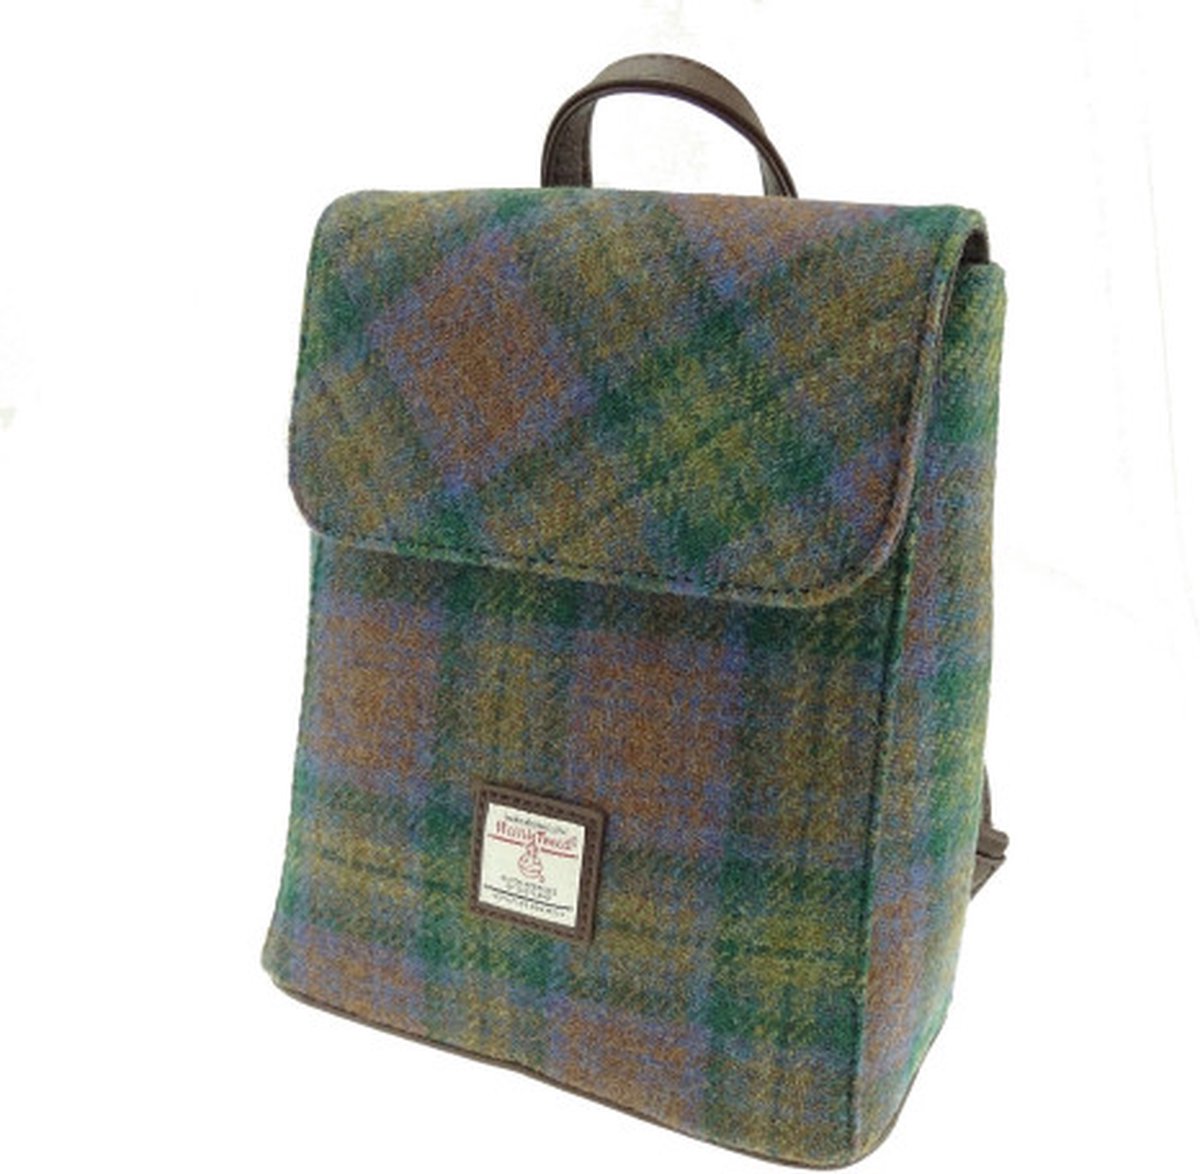 Glen Appin Mini Rugzak Tummel Skye Tartan - Echte Harris Tweed - Made in Scotland